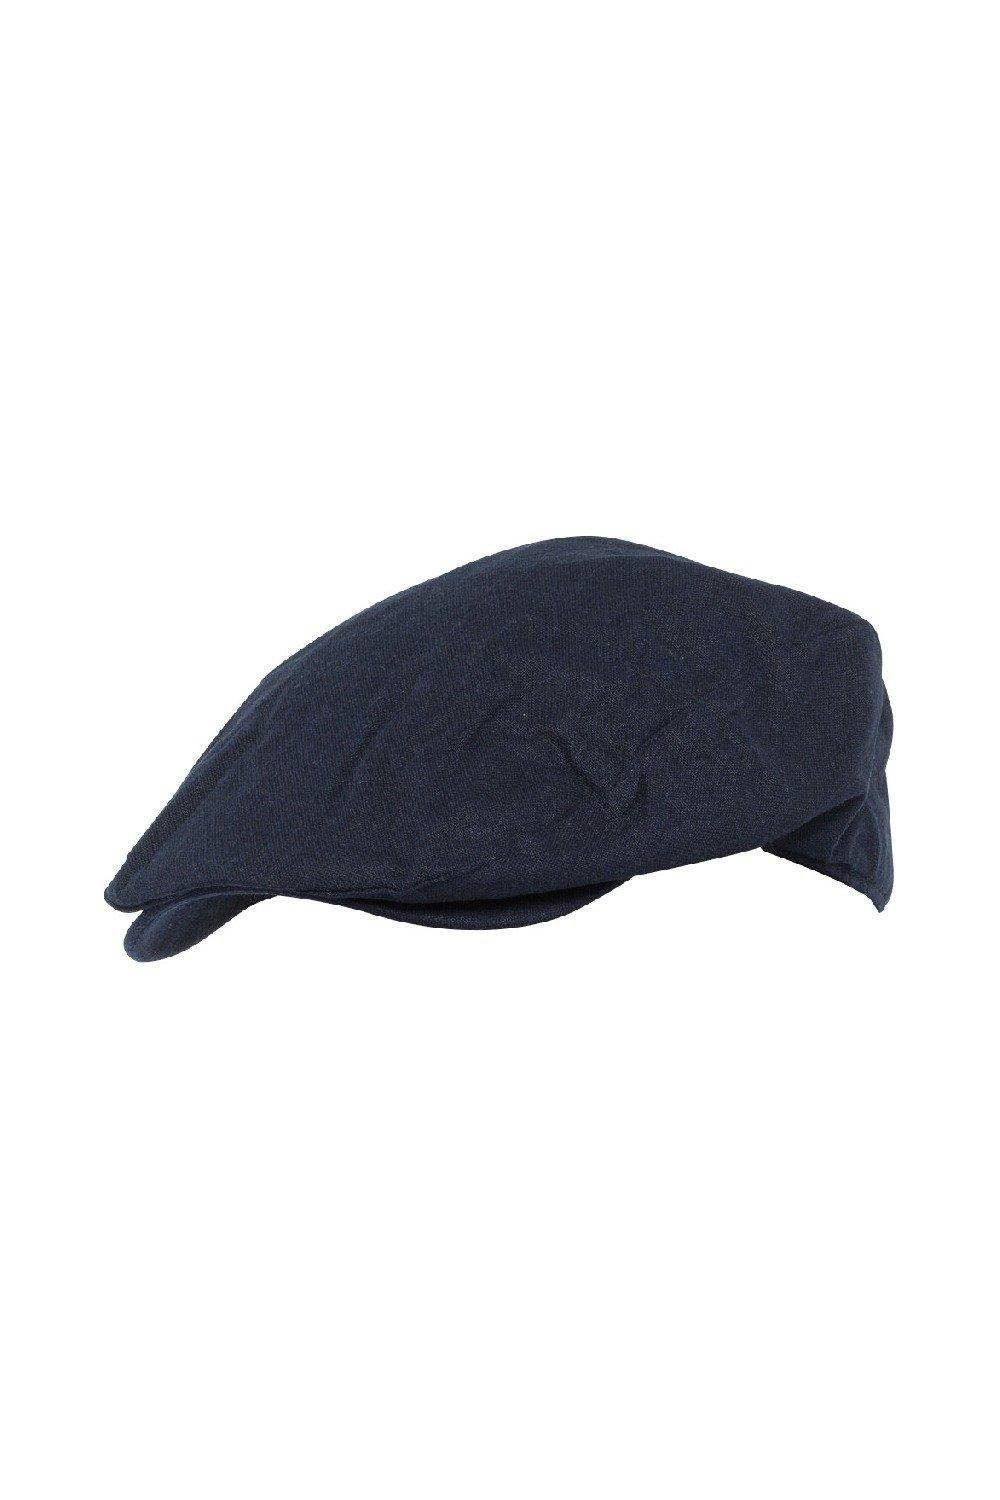 Дышащая льняная плоская шапка на лето Sock Snob, синий женская кепка 2022 модная дизайнерская бейсболка женские кепки кепки летние кепки для женщин снэпбэк кепка пляжная шляпа шляпы от солнца